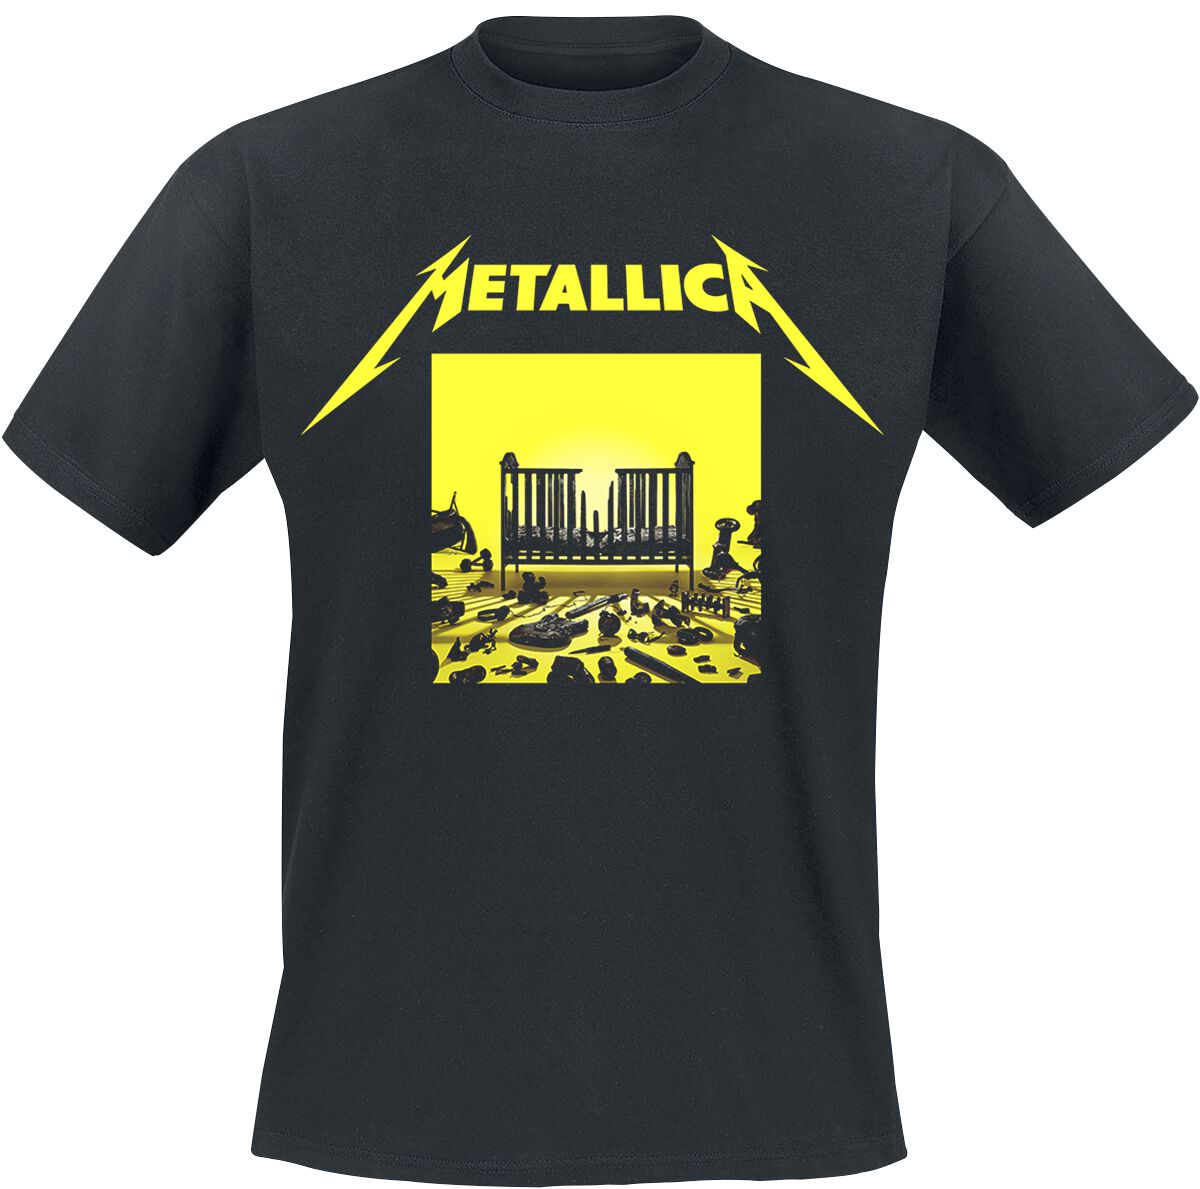 Metallica T-Shirt - M72 Squared Cover - S bis 5XL - für Männer - Größe 4XL - schwarz  - Lizenziertes Merchandise!